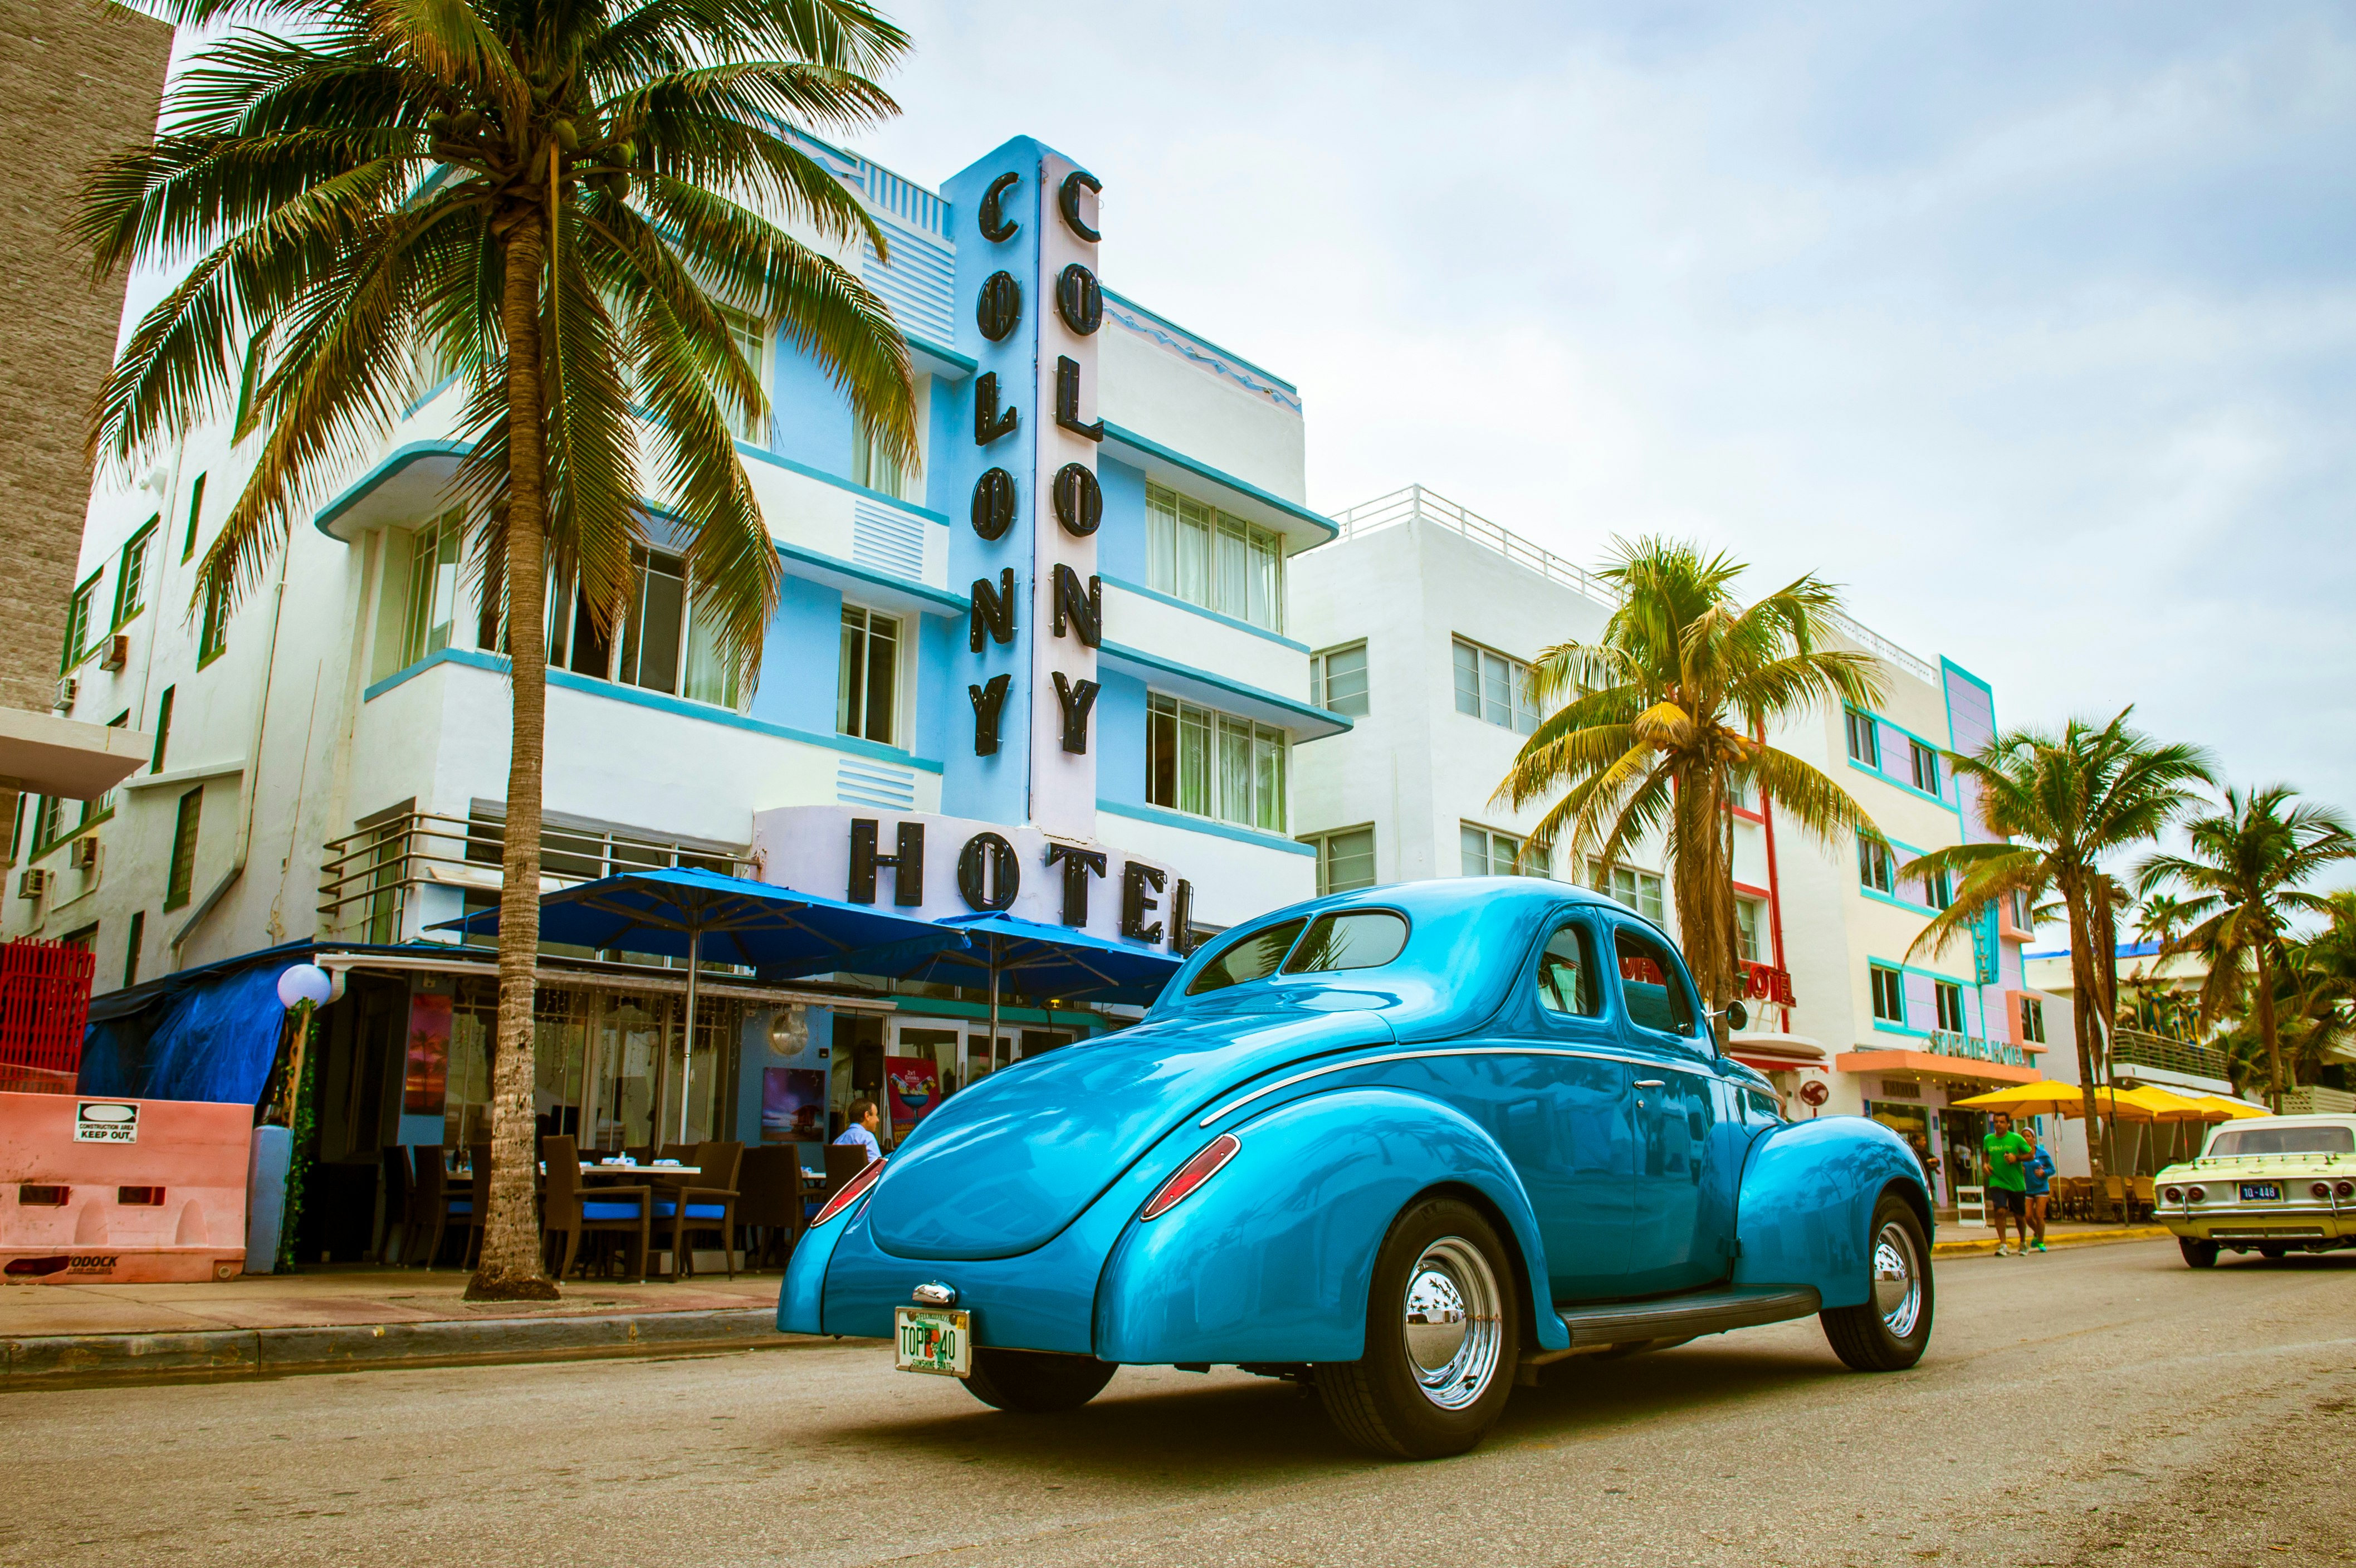 En ljusblå veteranbil står parkerad utanför det art déco-inspirerade Colony Hotel i Miami.  Hotellet flankeras av palmer. 